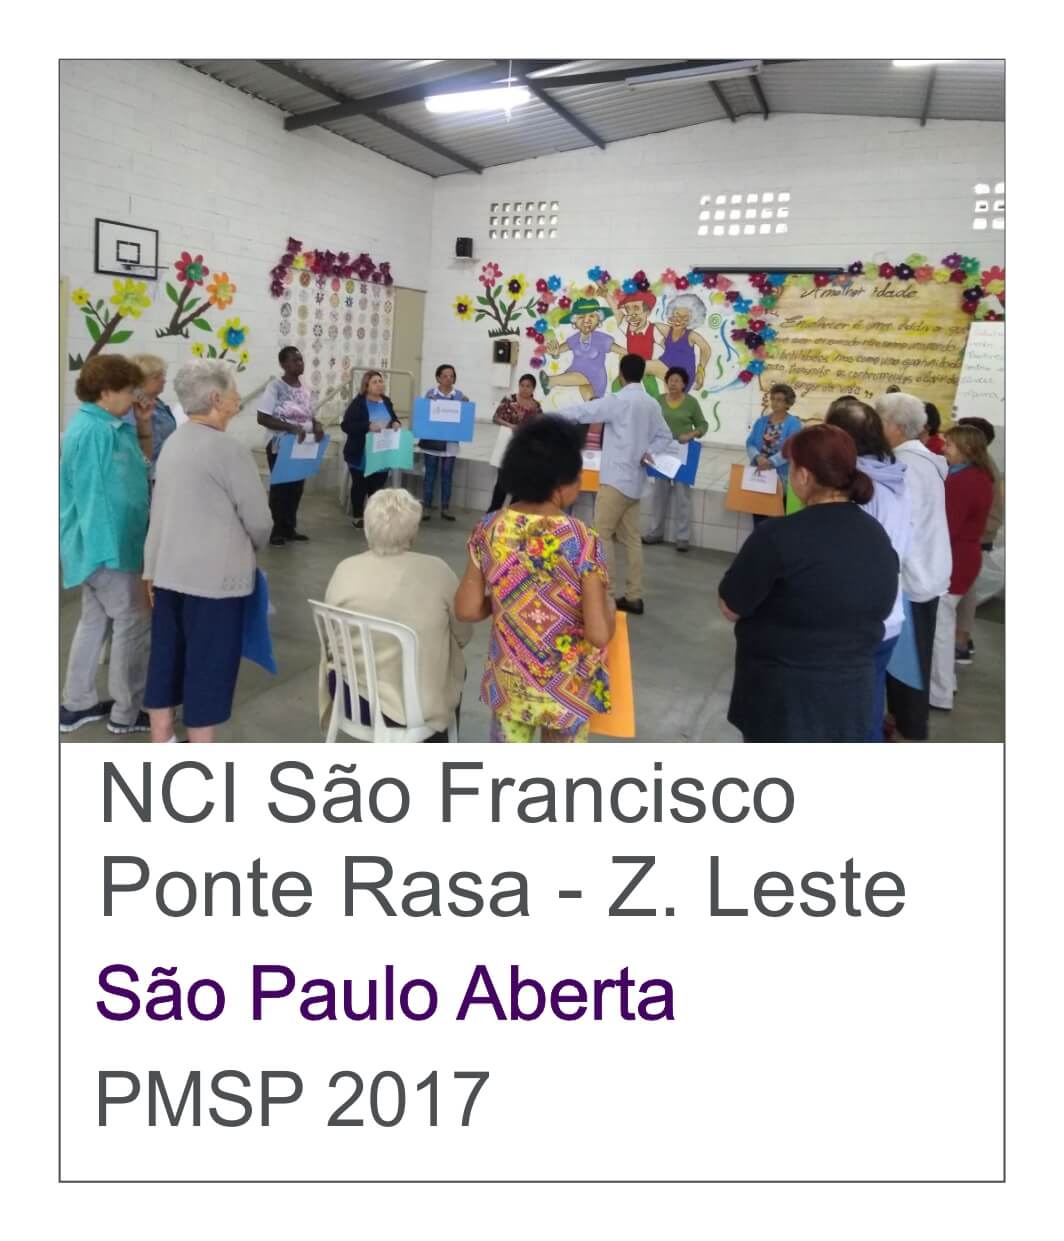 NCI Sao Francisco Ponte Rasa Jogos para Idosos